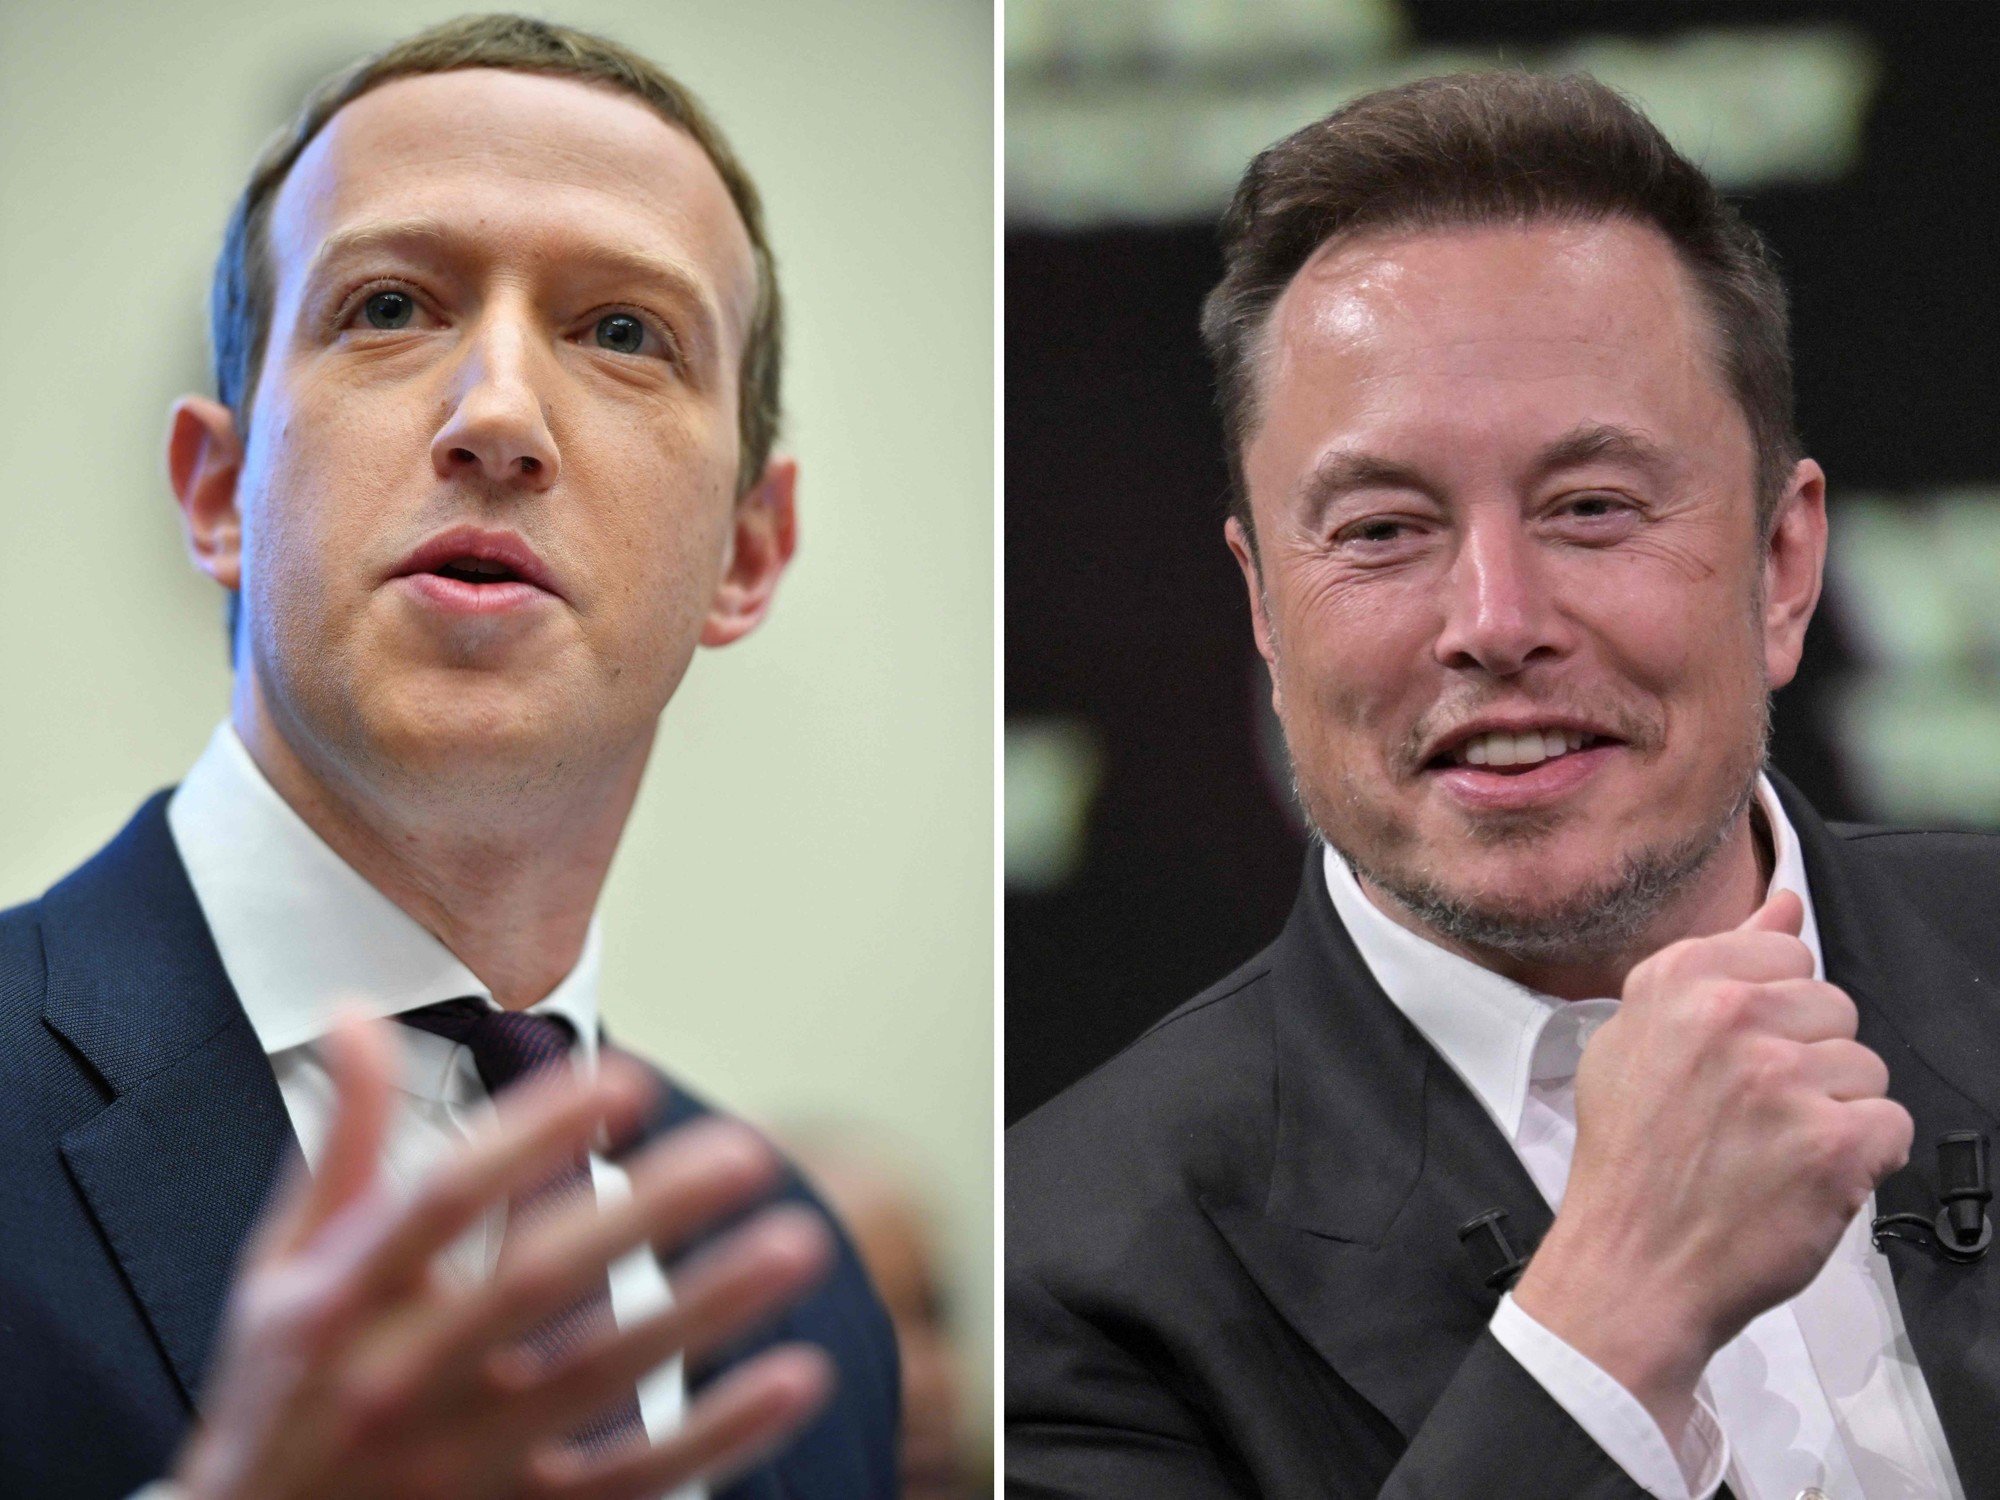 Zuckerberg, Musk y Altman se reunirán con el Gobierno de EE.UU. para regular la inteligencia artificial